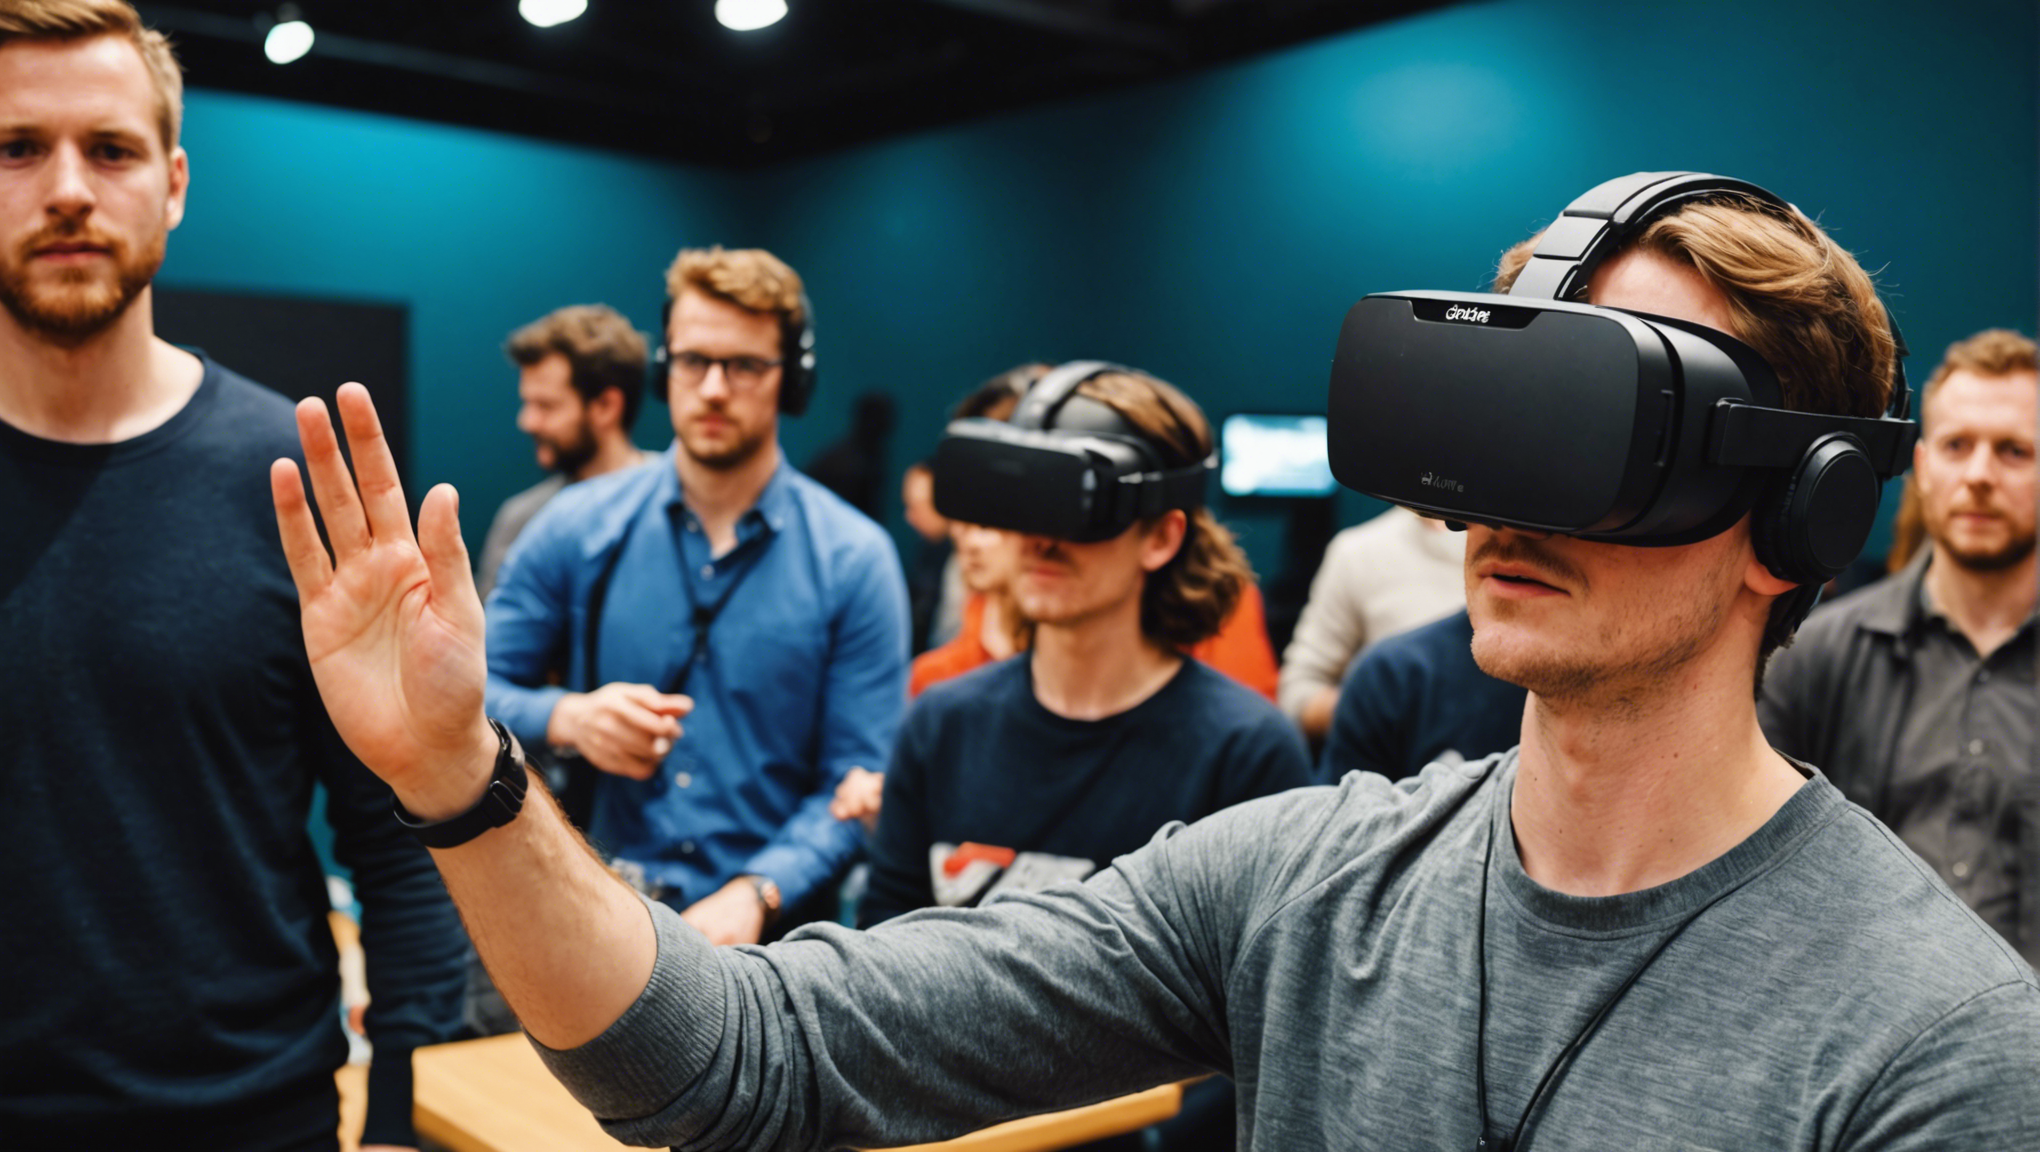 découvrez les meilleures attractions à visiter lors d'une animation de réalité virtuelle à lille et plongez dans des expériences immersives uniques.